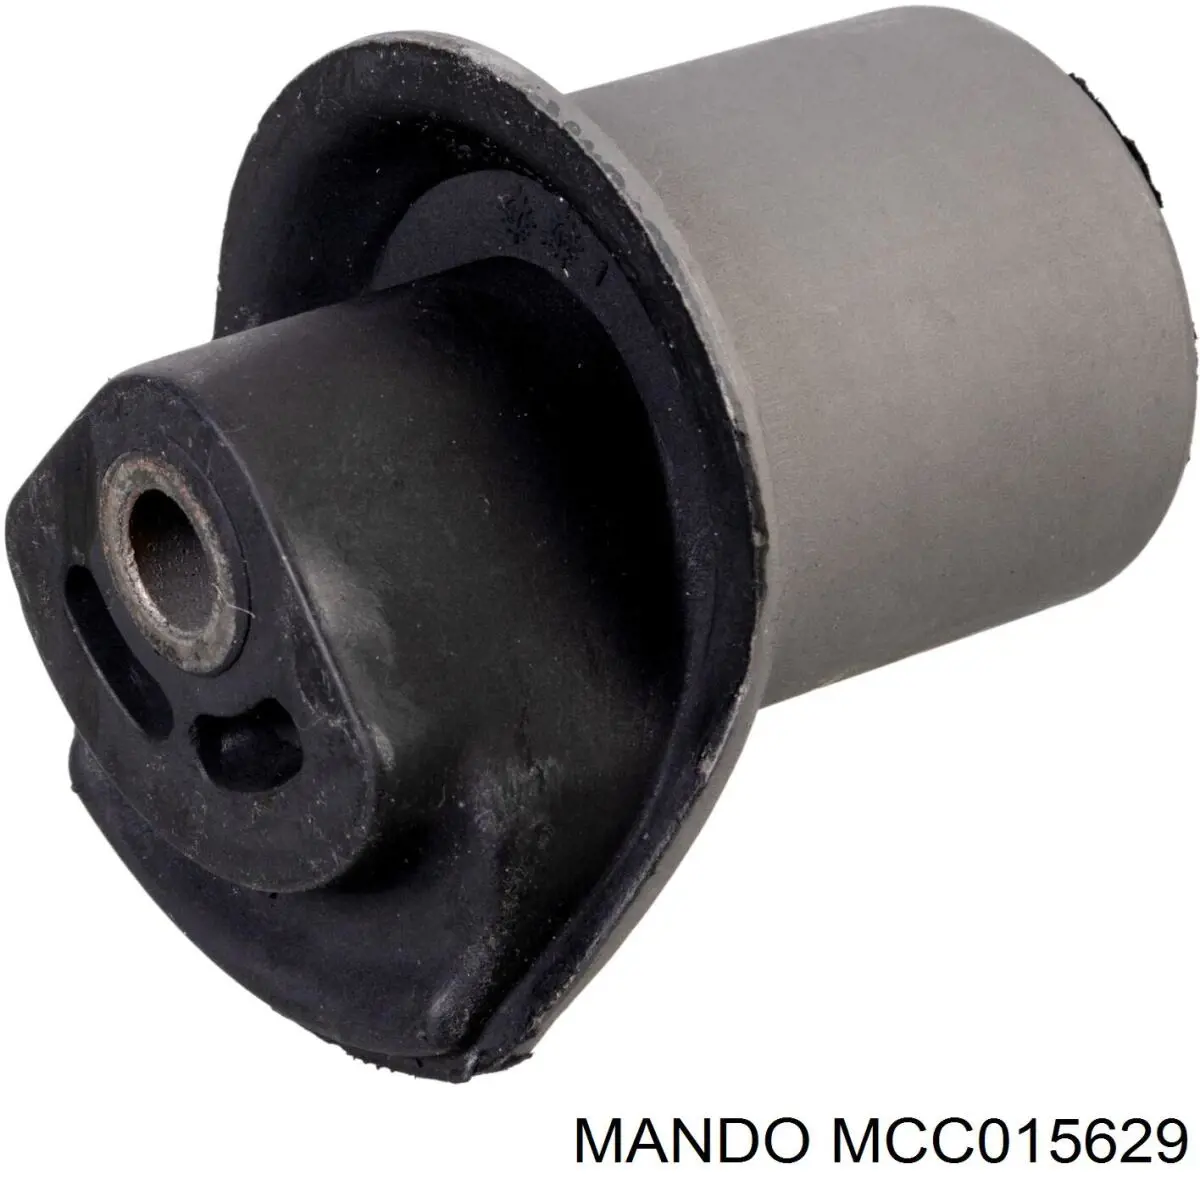 MCC015629 Mando сайлентблок задньої балки/підрамника